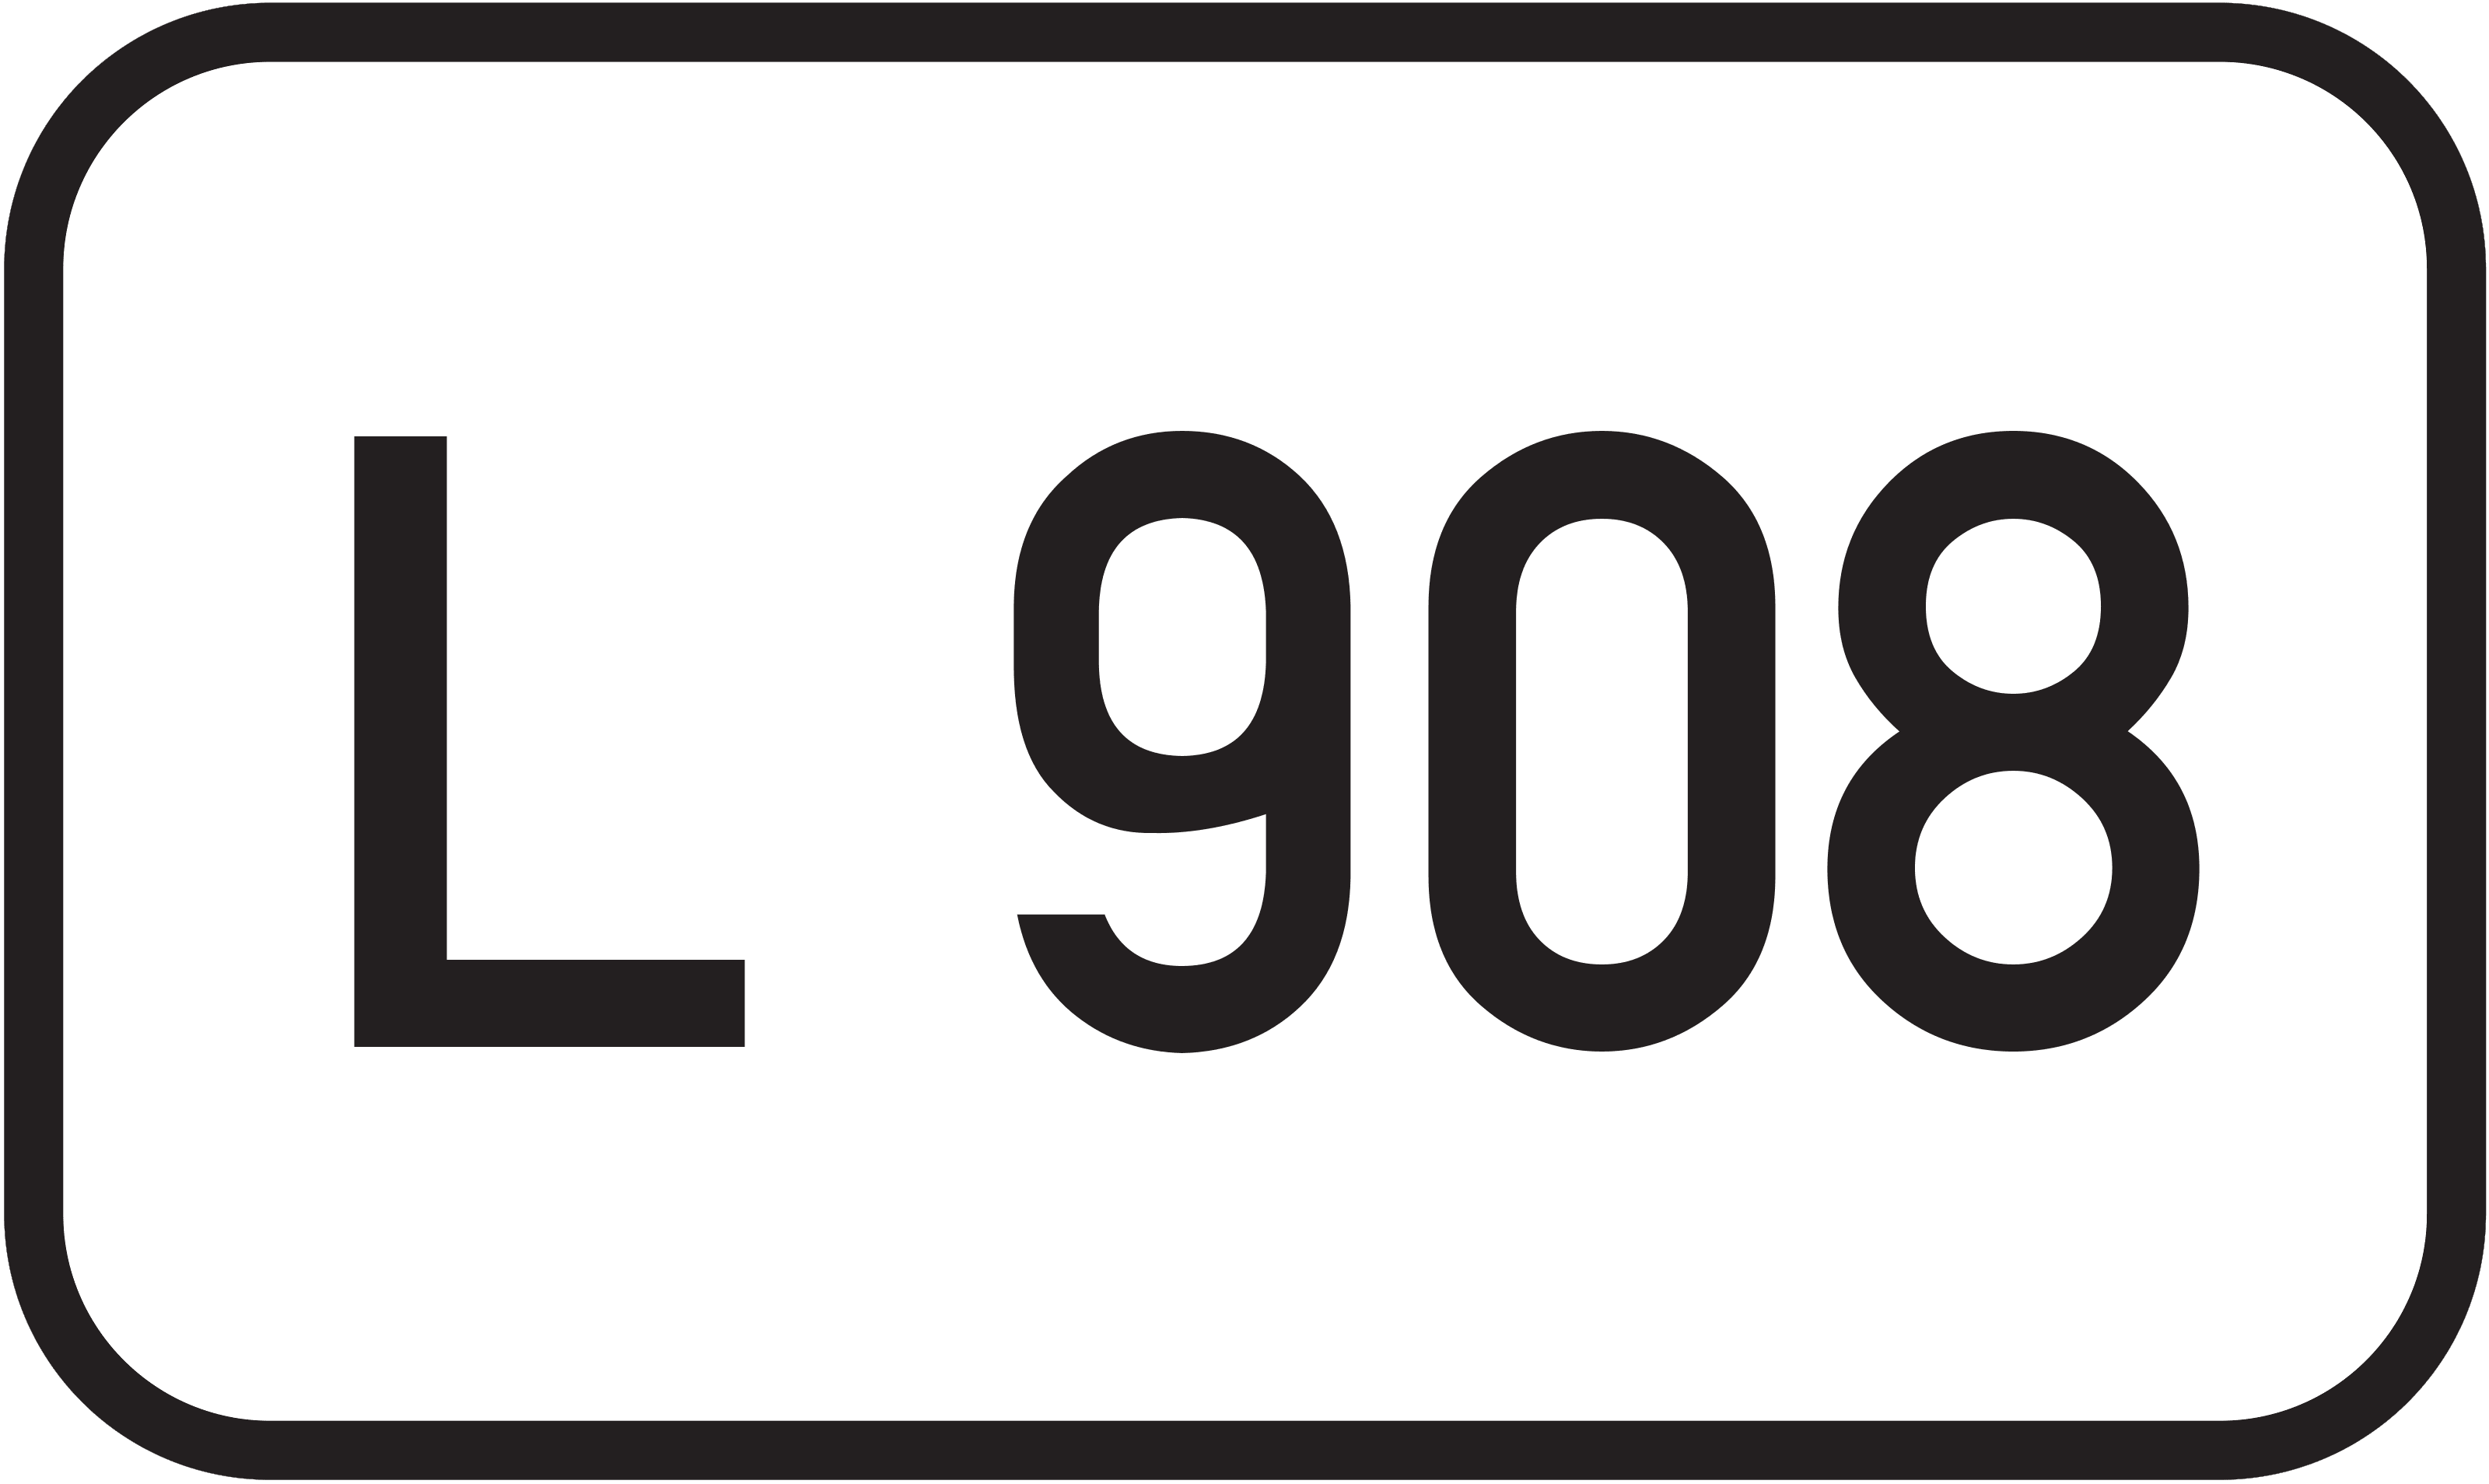 Landesstraße L 908